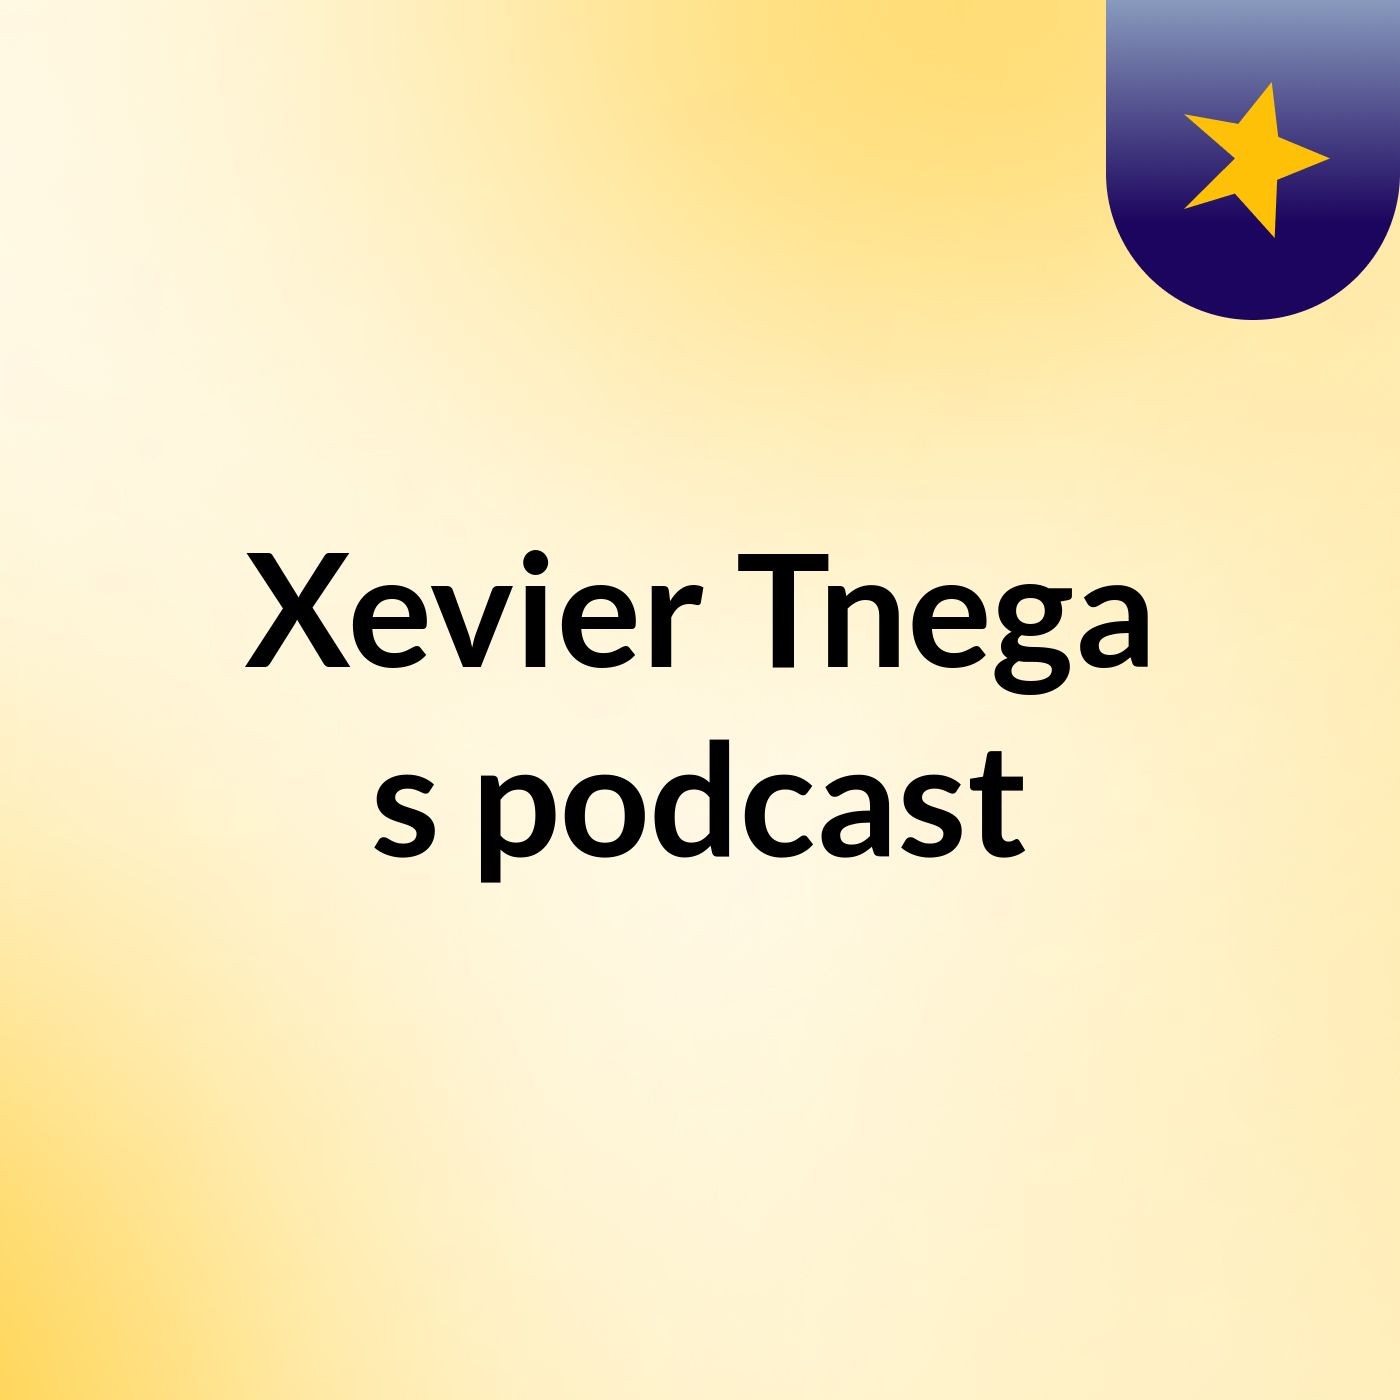 Xevier Tnega's podcast